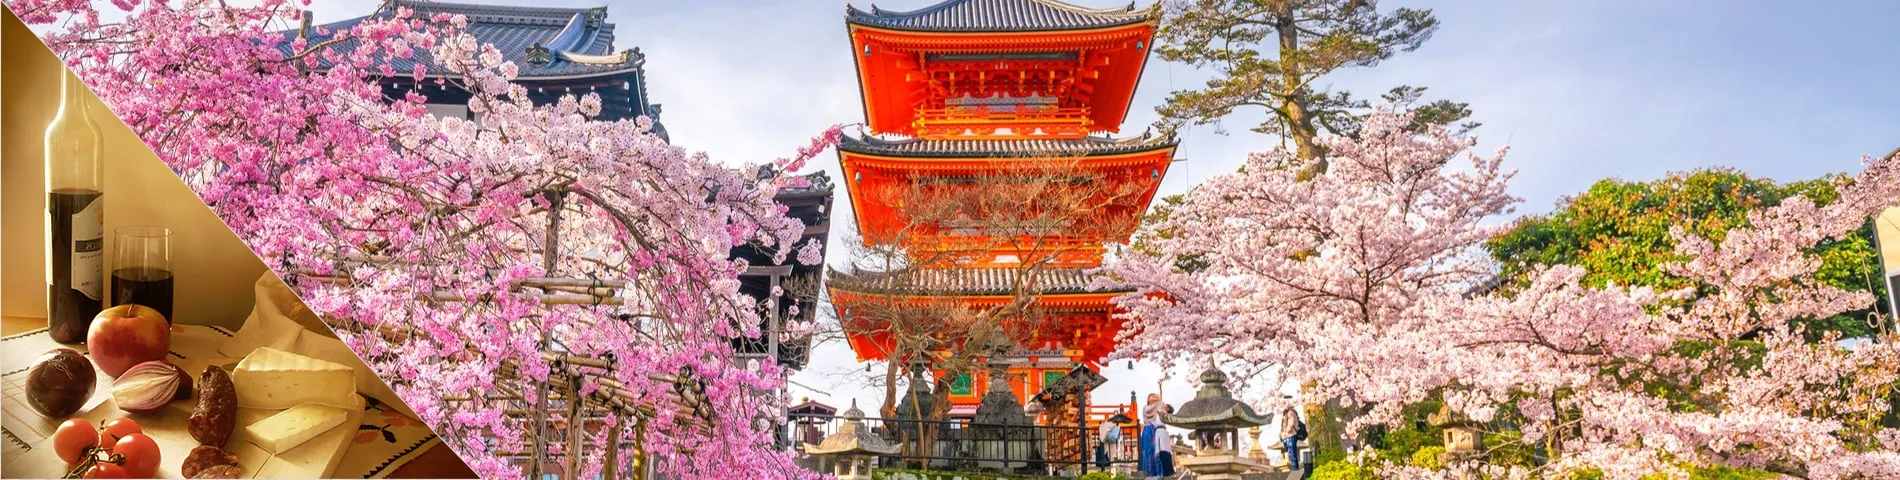 Кіото - японська та пізнання культури